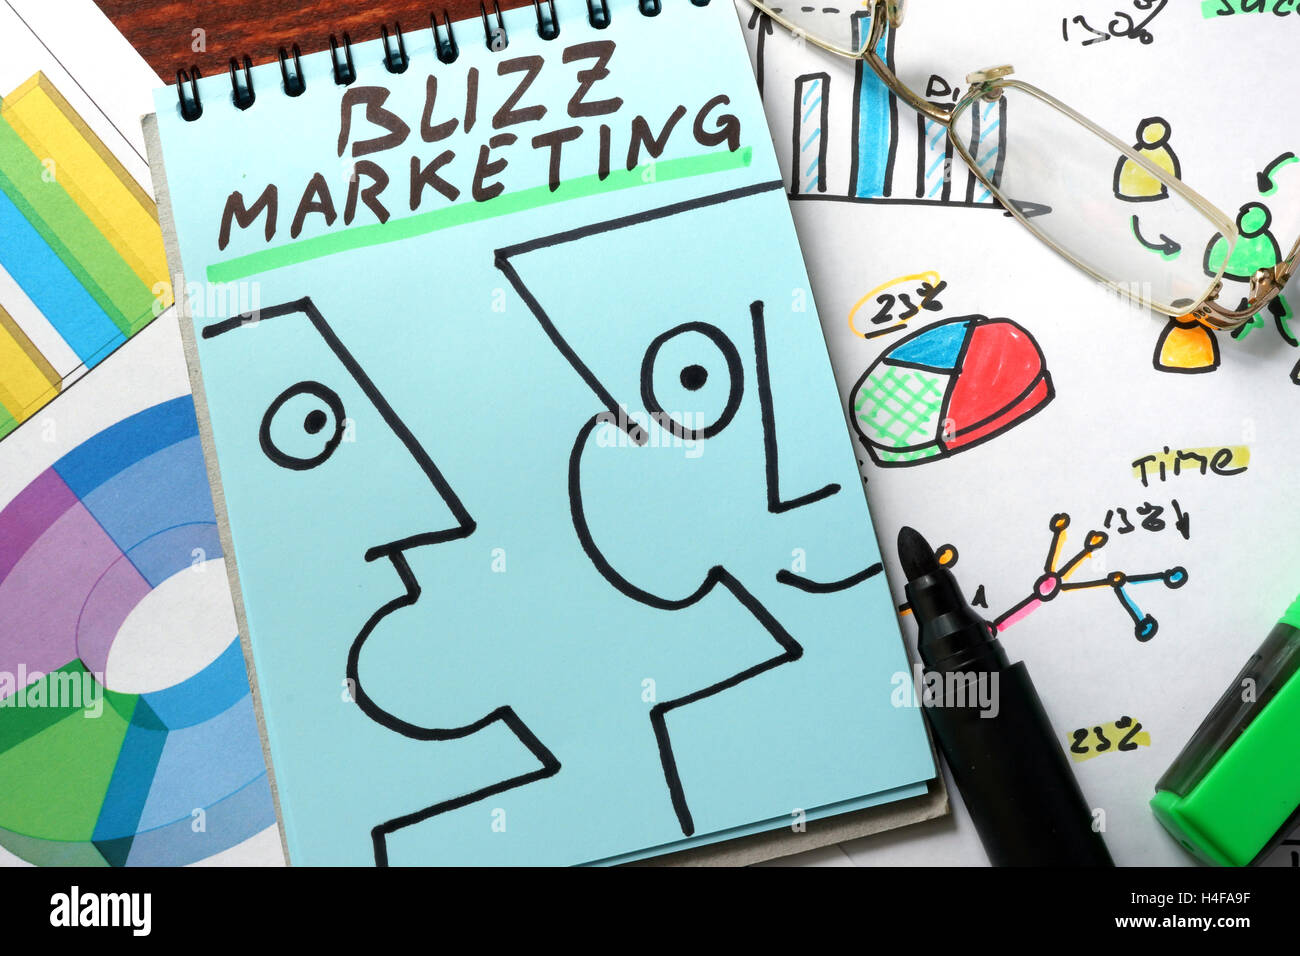 Buzz marketing escrito sobre papel azul. Foto de stock